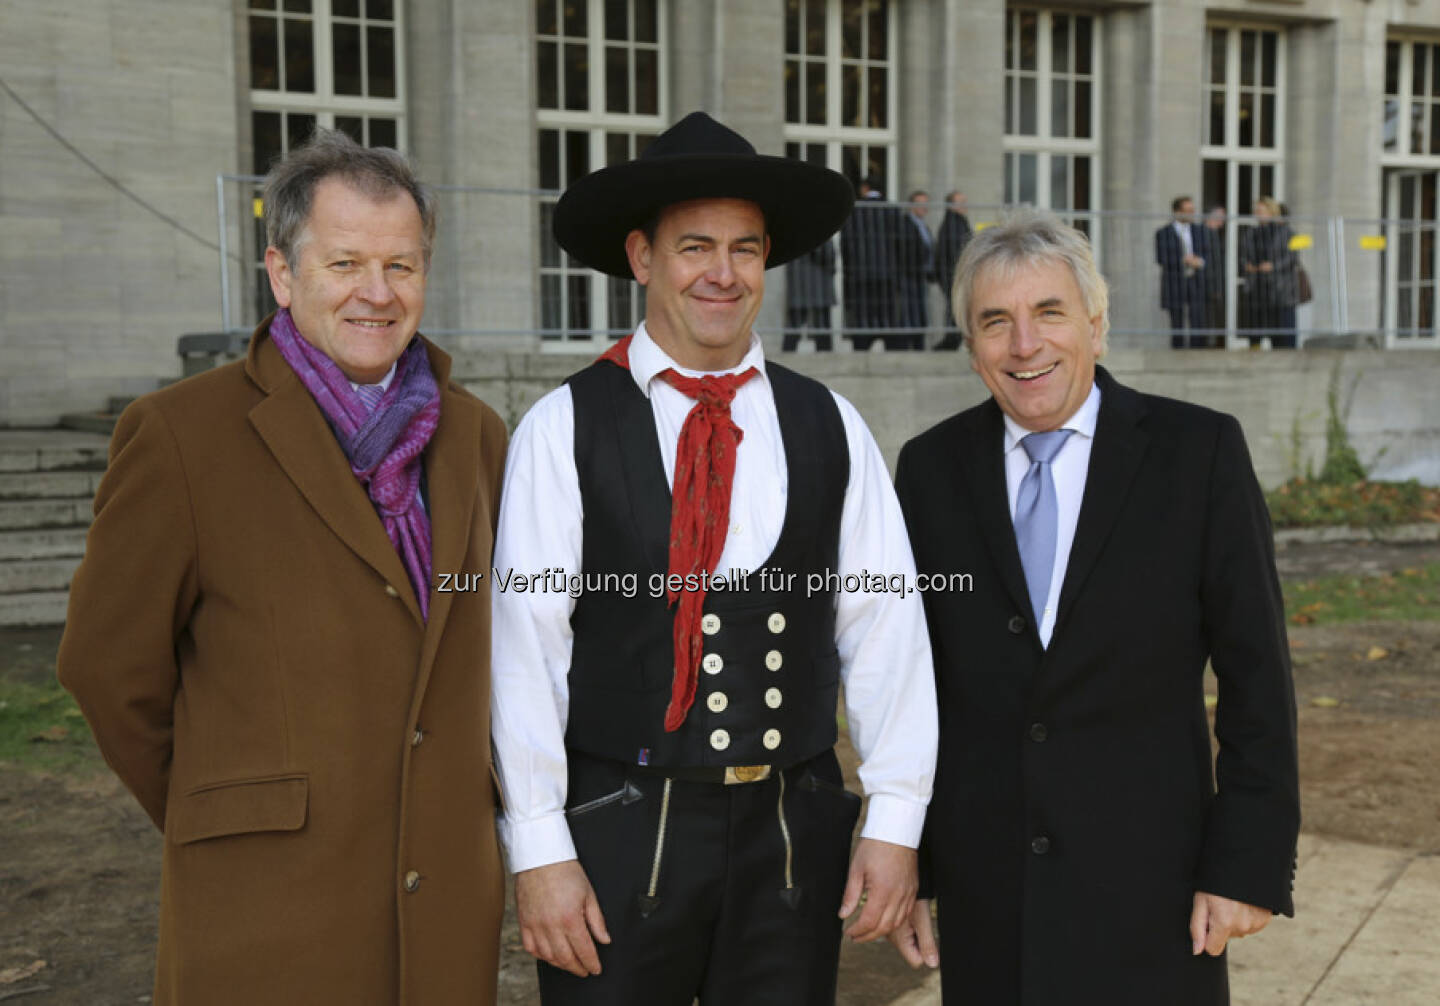 Eduard Zehetner, Mario Lachmann, Oberbürgermeister Jürgen Roters beim Gerling Quartier Richtfest Köln (c) Immofinanz